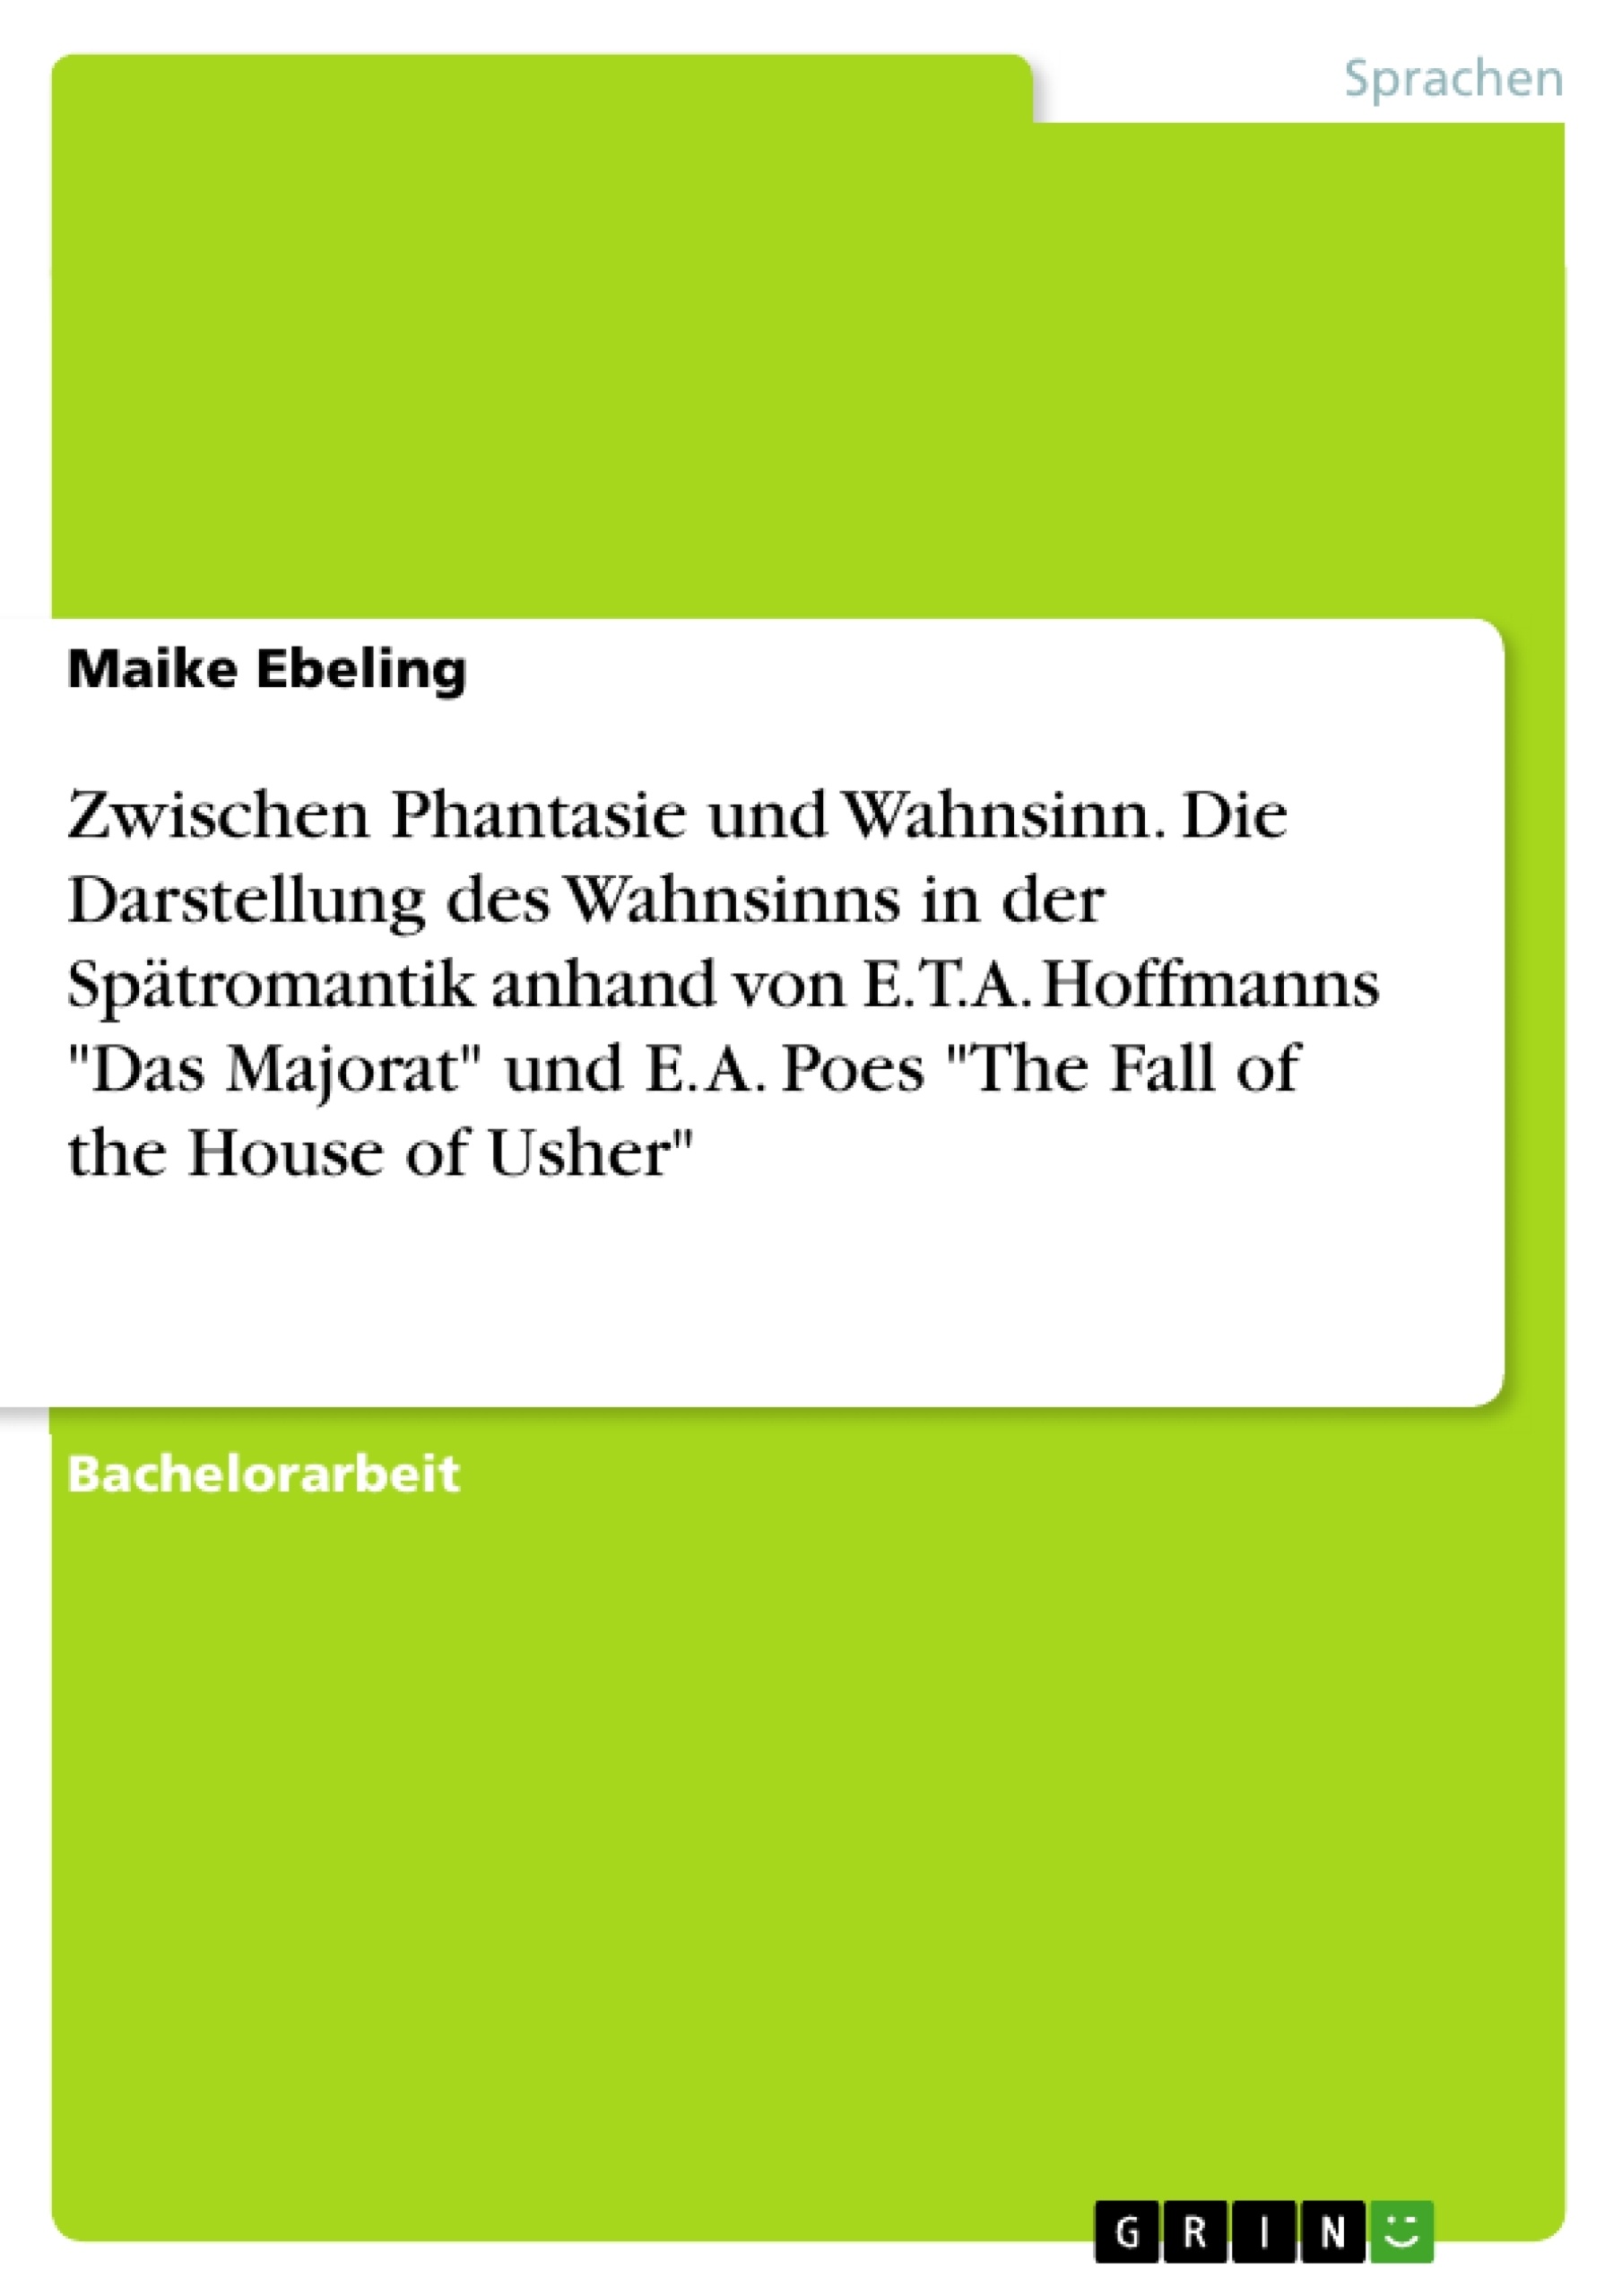 Titel: Zwischen Phantasie und Wahnsinn. Die Darstellung des Wahnsinns in der Spätromantik anhand von E.T.A. Hoffmanns "Das Majorat" und E. A. Poes "The Fall of the House of Usher"